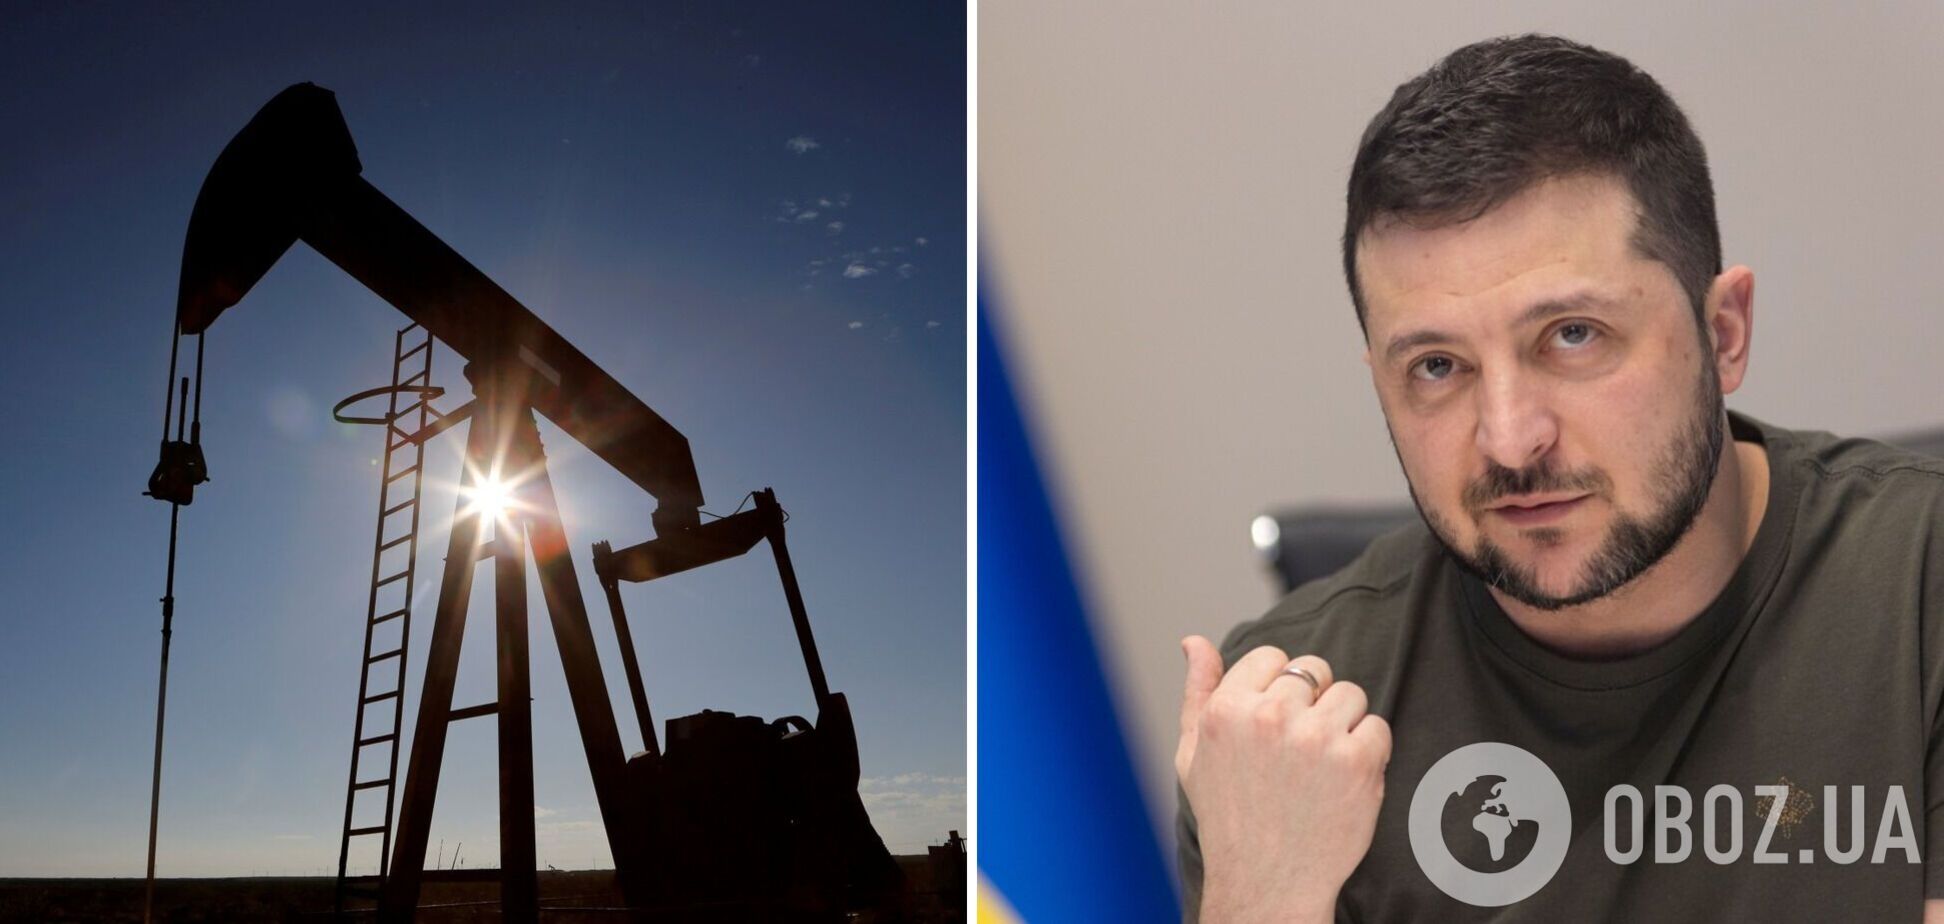 Давно пришло время именно таких санкций против РФ: Зеленский о решении G7 насчет российской нефти